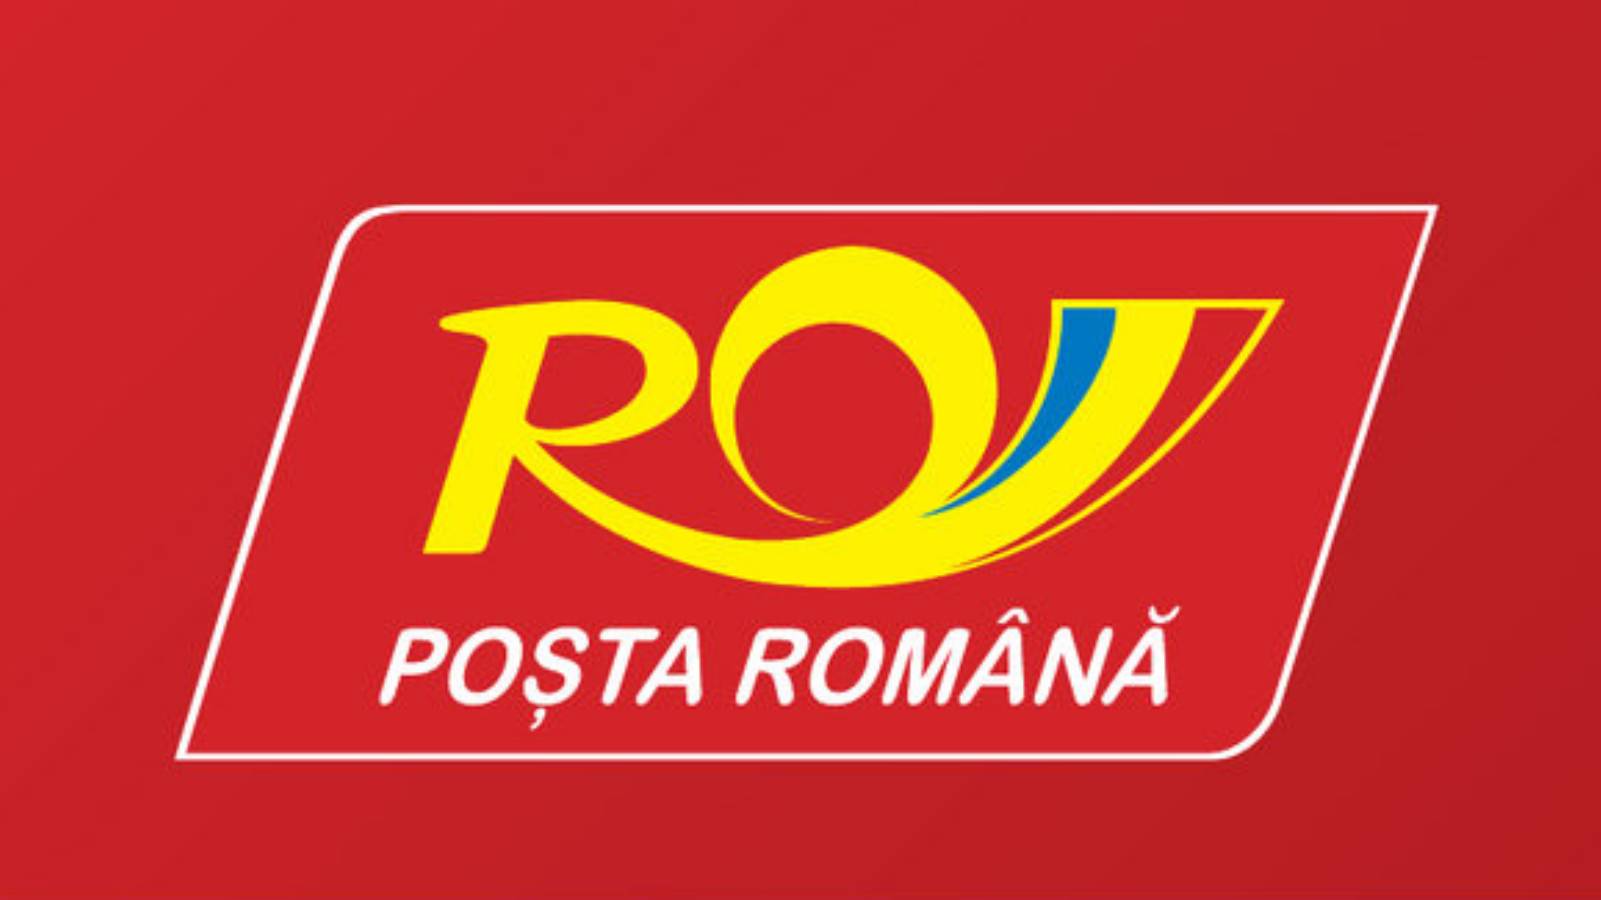 Transportgebührenrechner der rumänischen Post